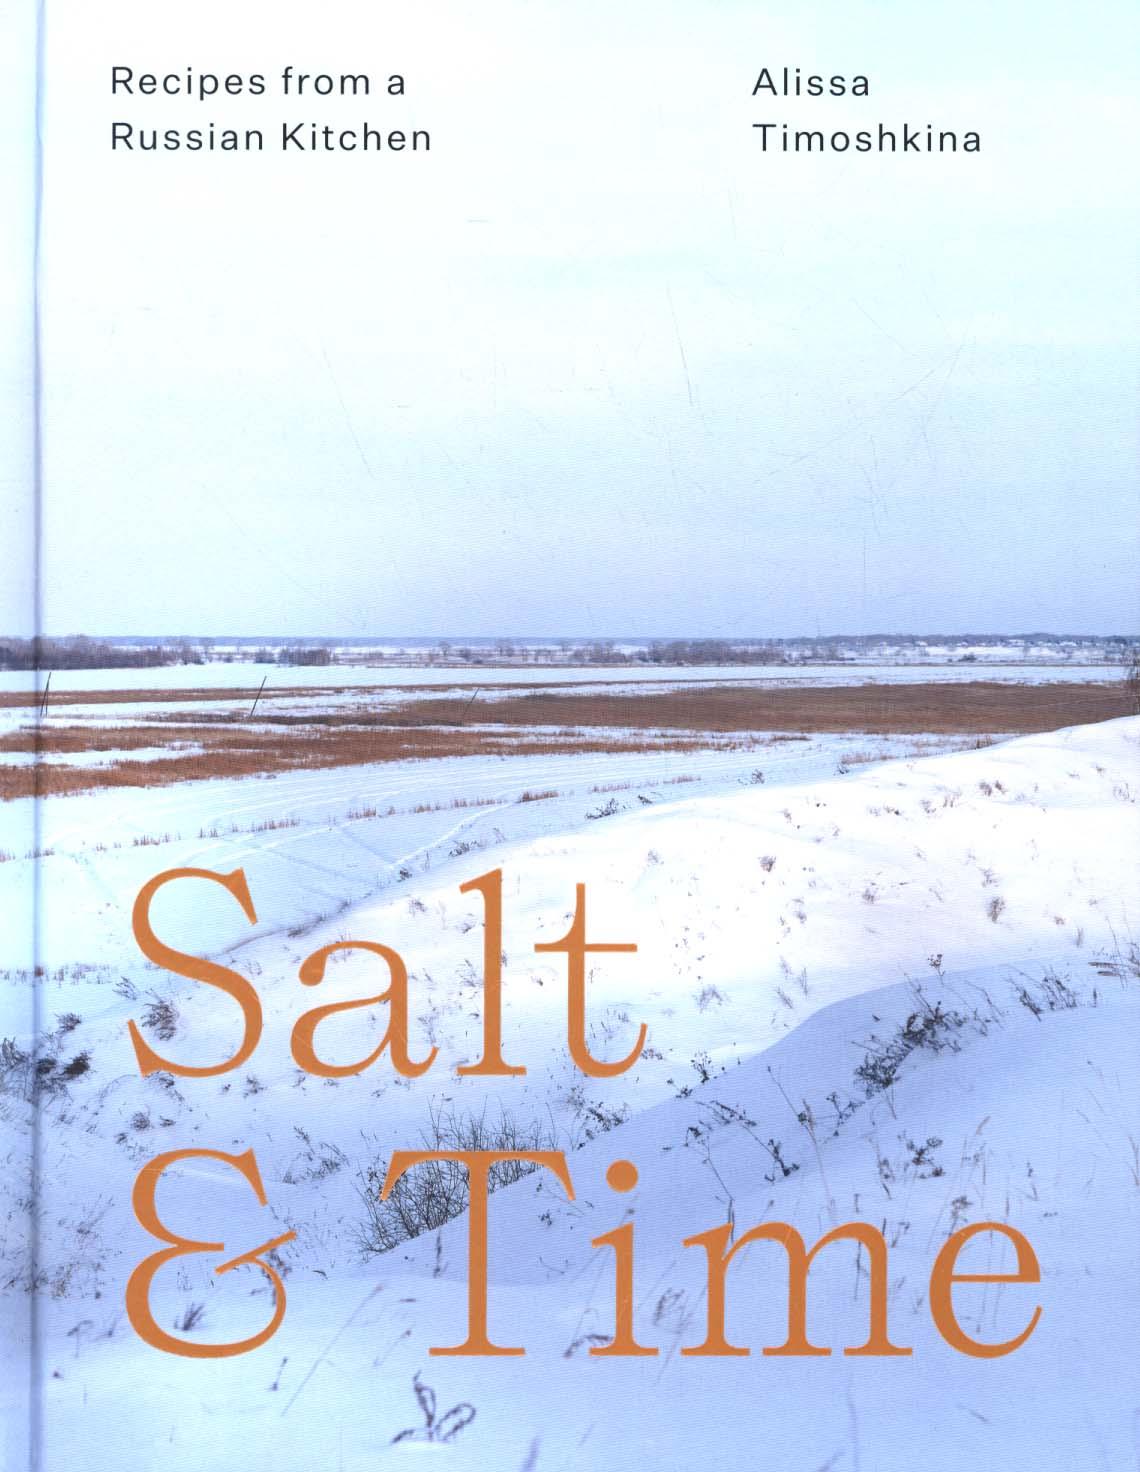 Salt & Time